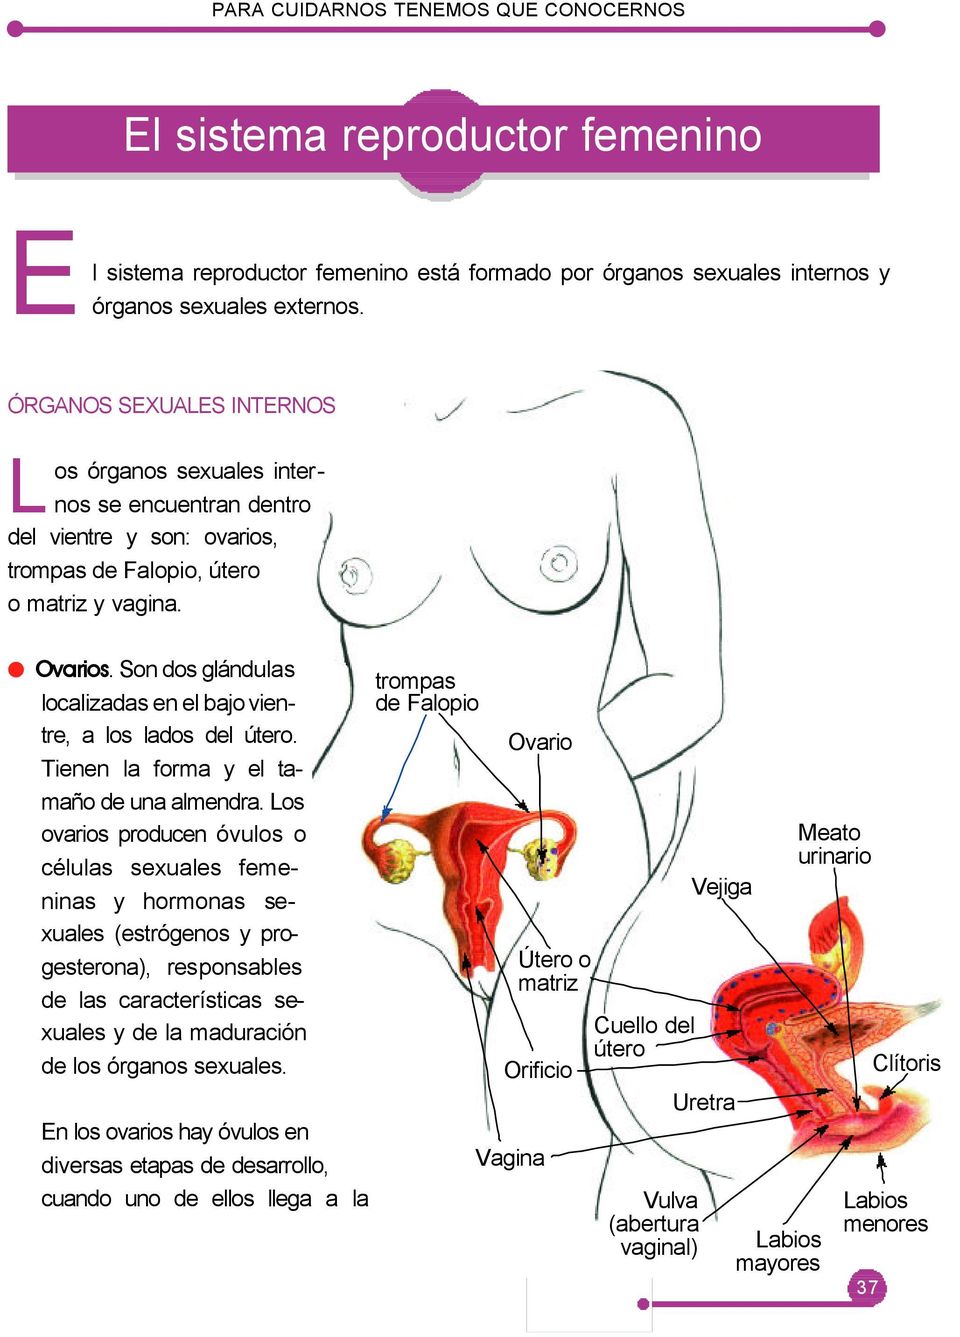 Son dos glándulas localizadas en el bajo vientre, a los lados del útero. Tienen la forma y el tamaño de una almendra.